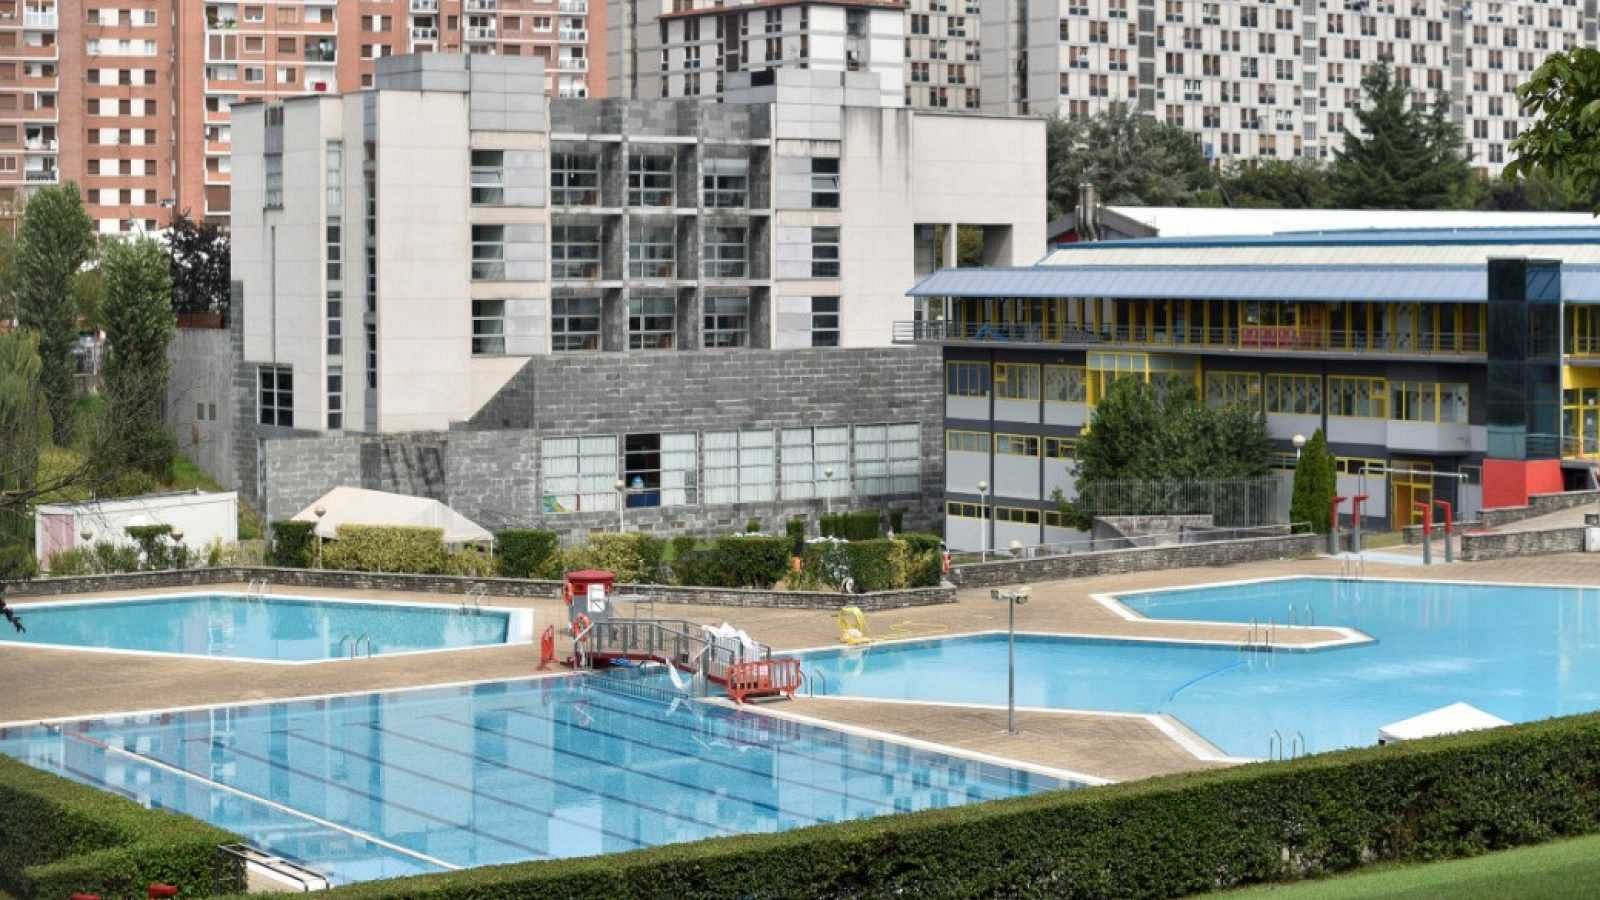 Las piscinas comunitarias se plantean si abrirán este verano debido a las restricciones - RTVE.es